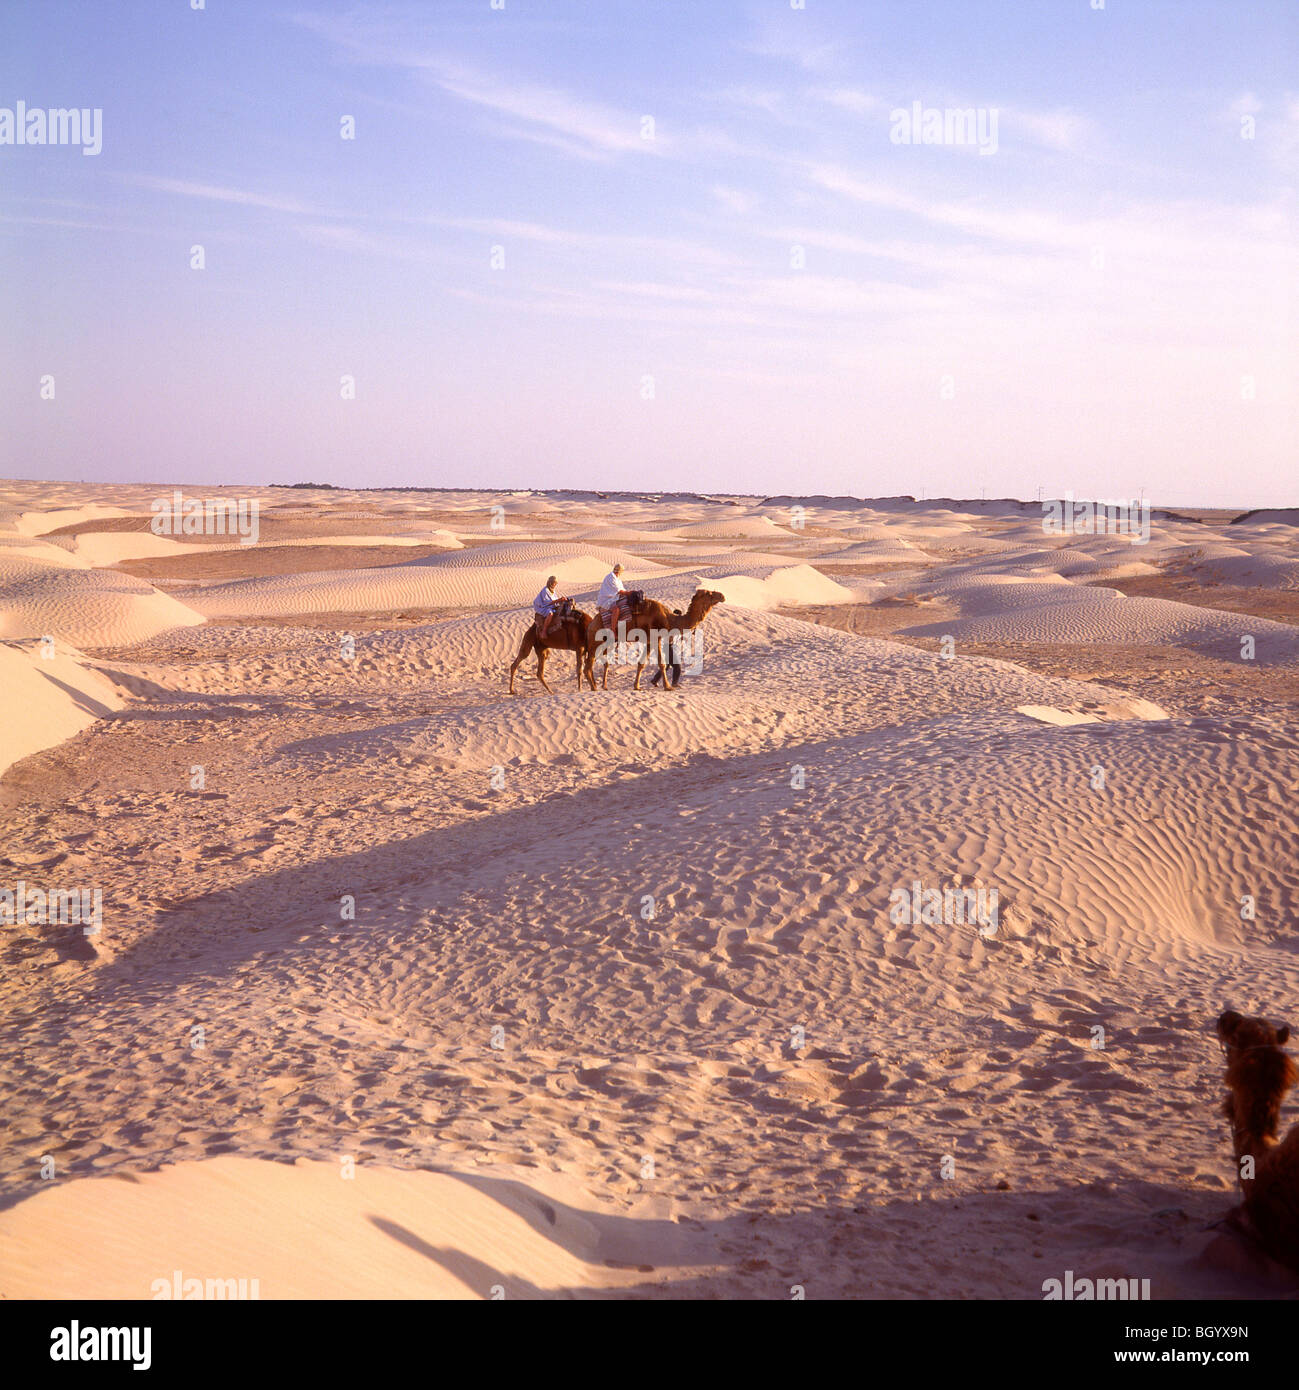 Safari del camello en el desierto, el desierto del Sahara, Túnez Foto de stock